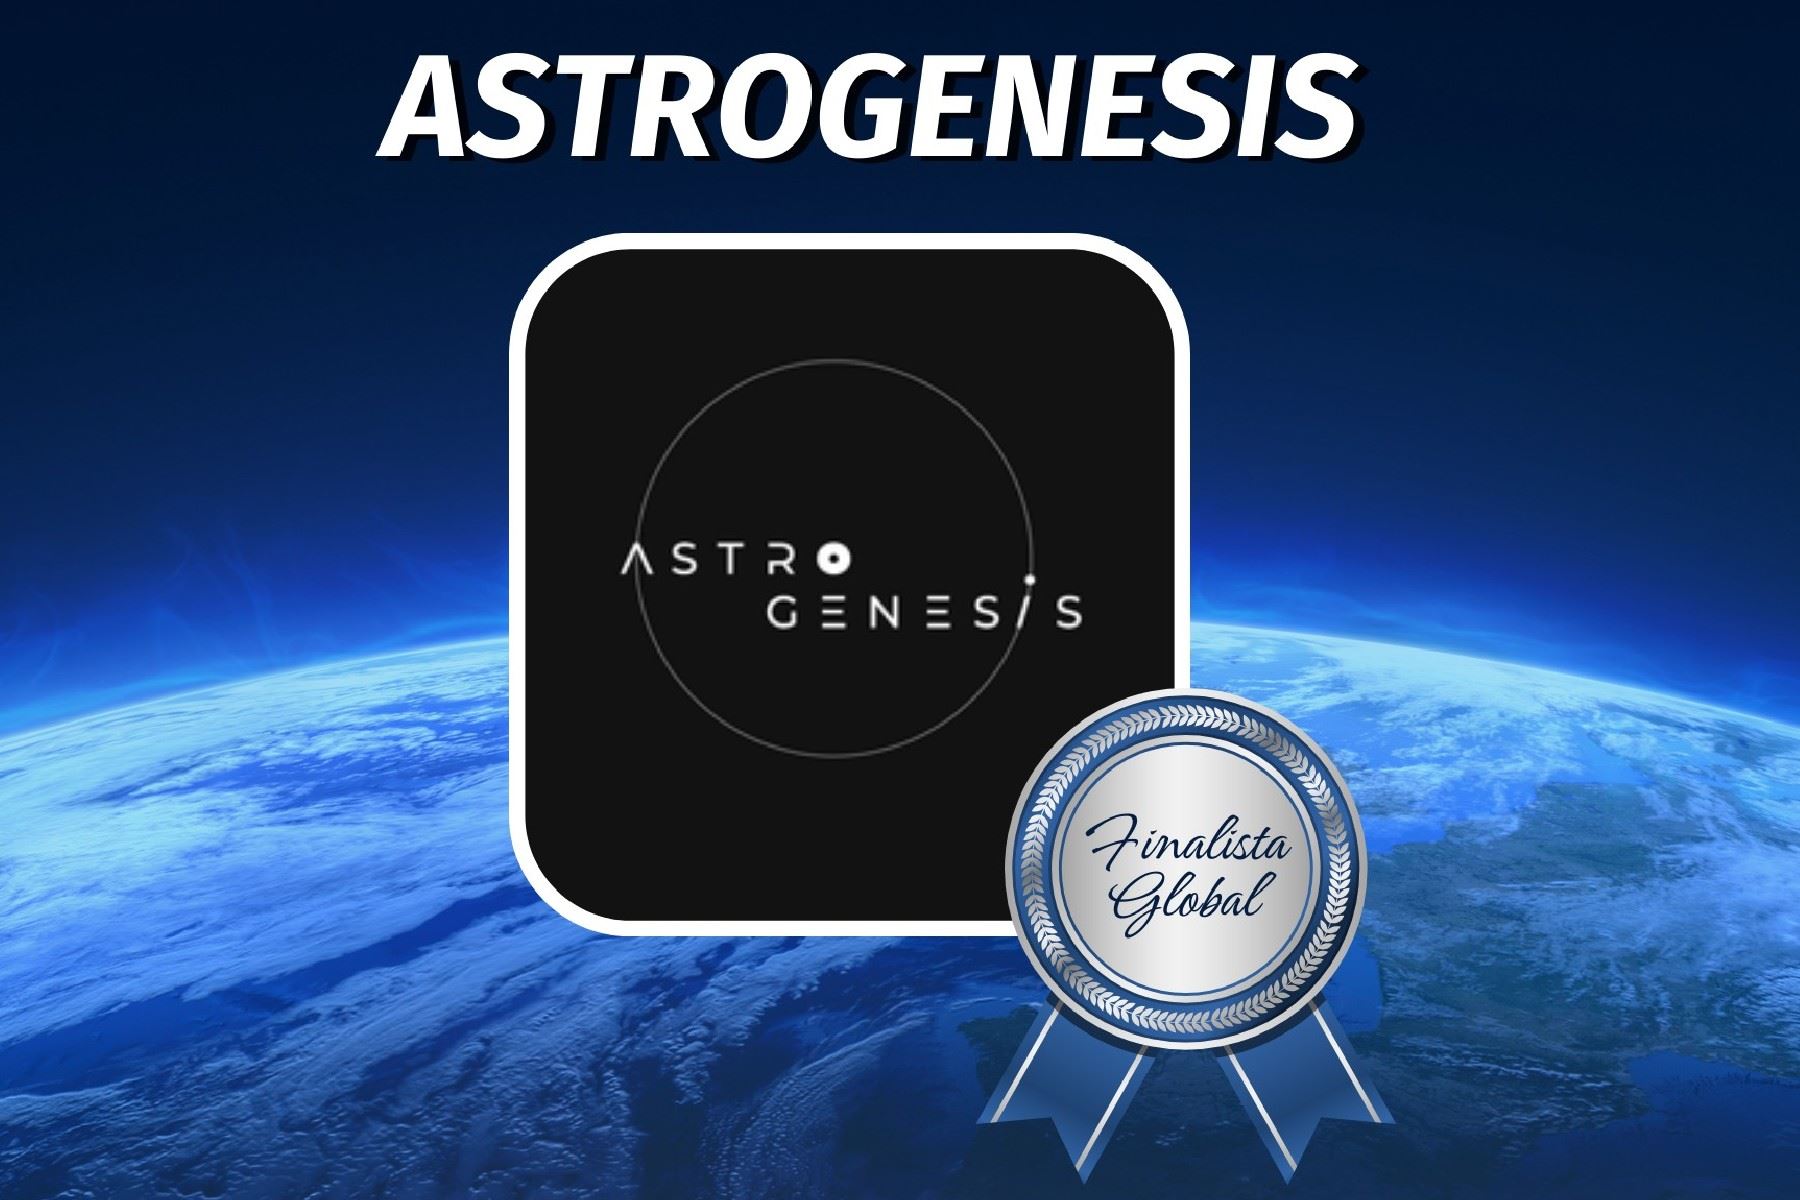 AstroGénesis se ubica actualmente entre los 40 mejores equipos de todo el mundo.